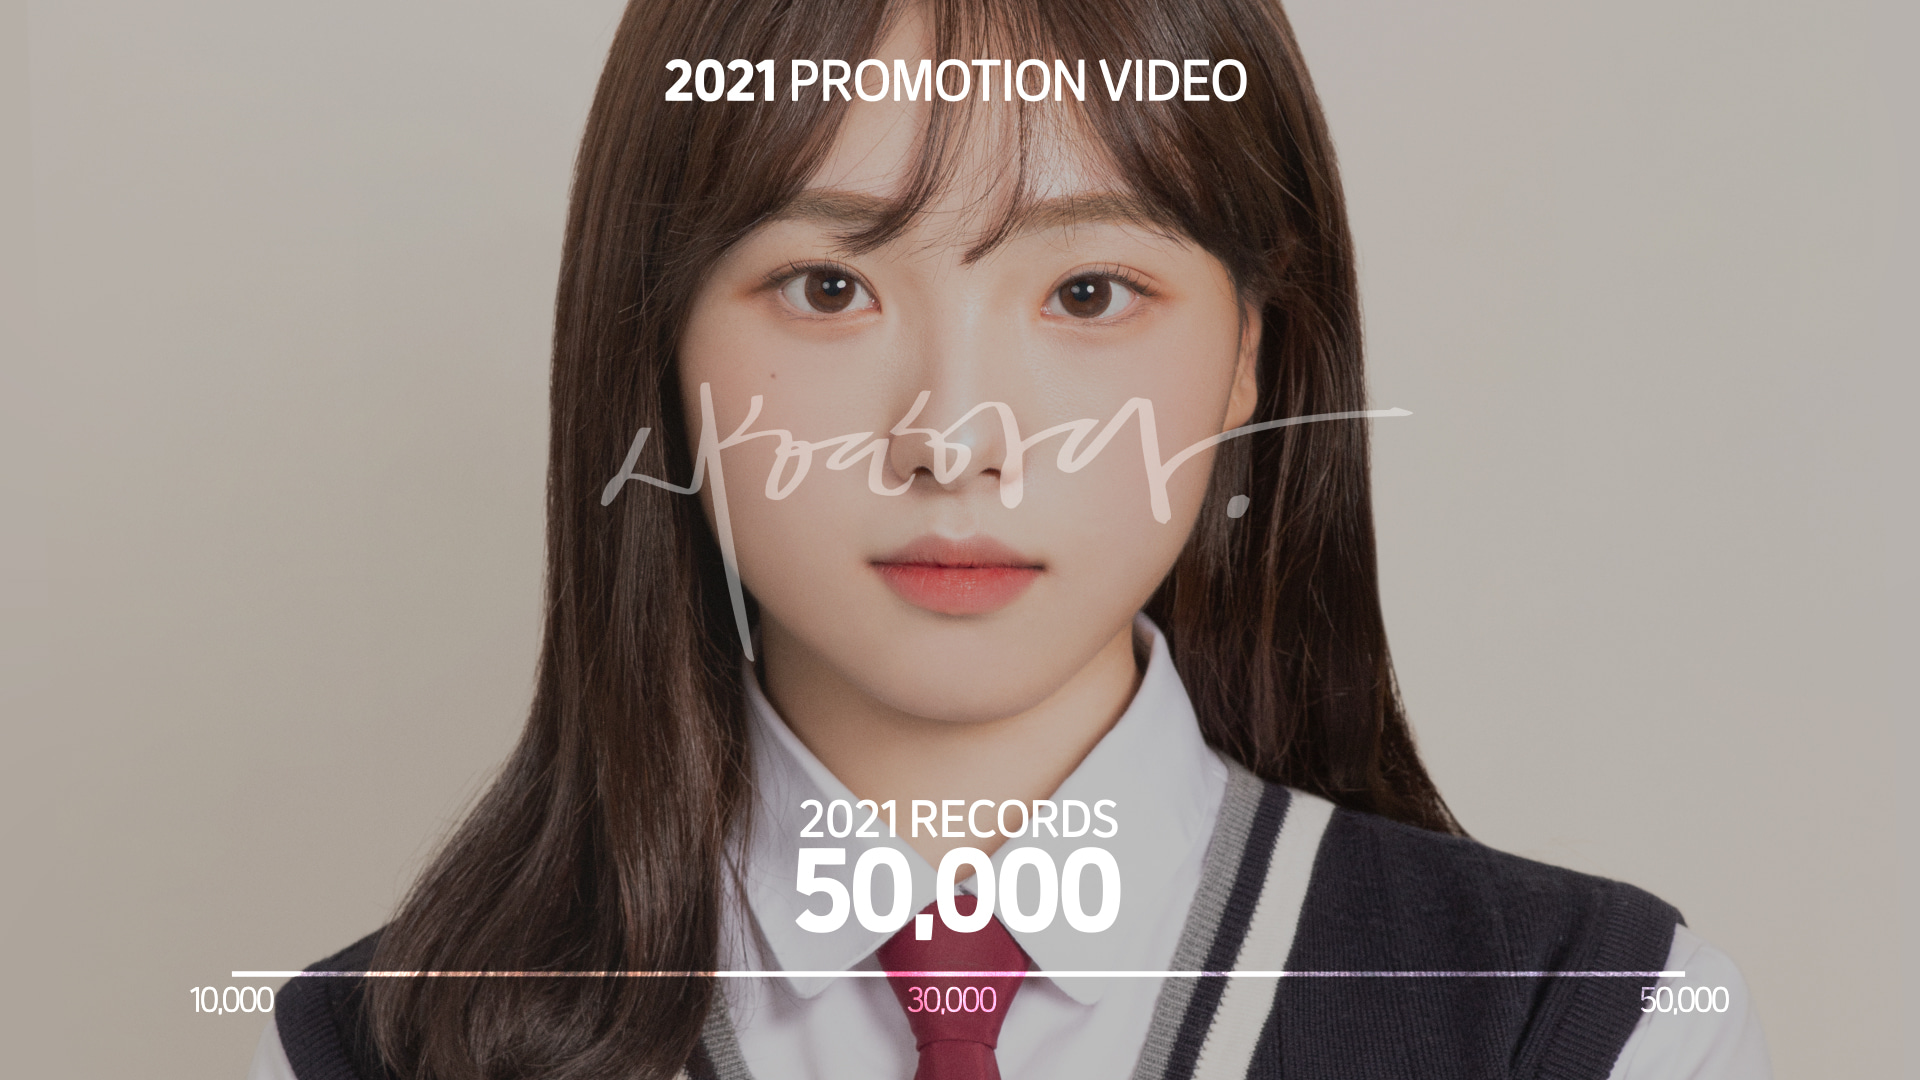 [시현하다] 2021 PROMOTION VIDEO